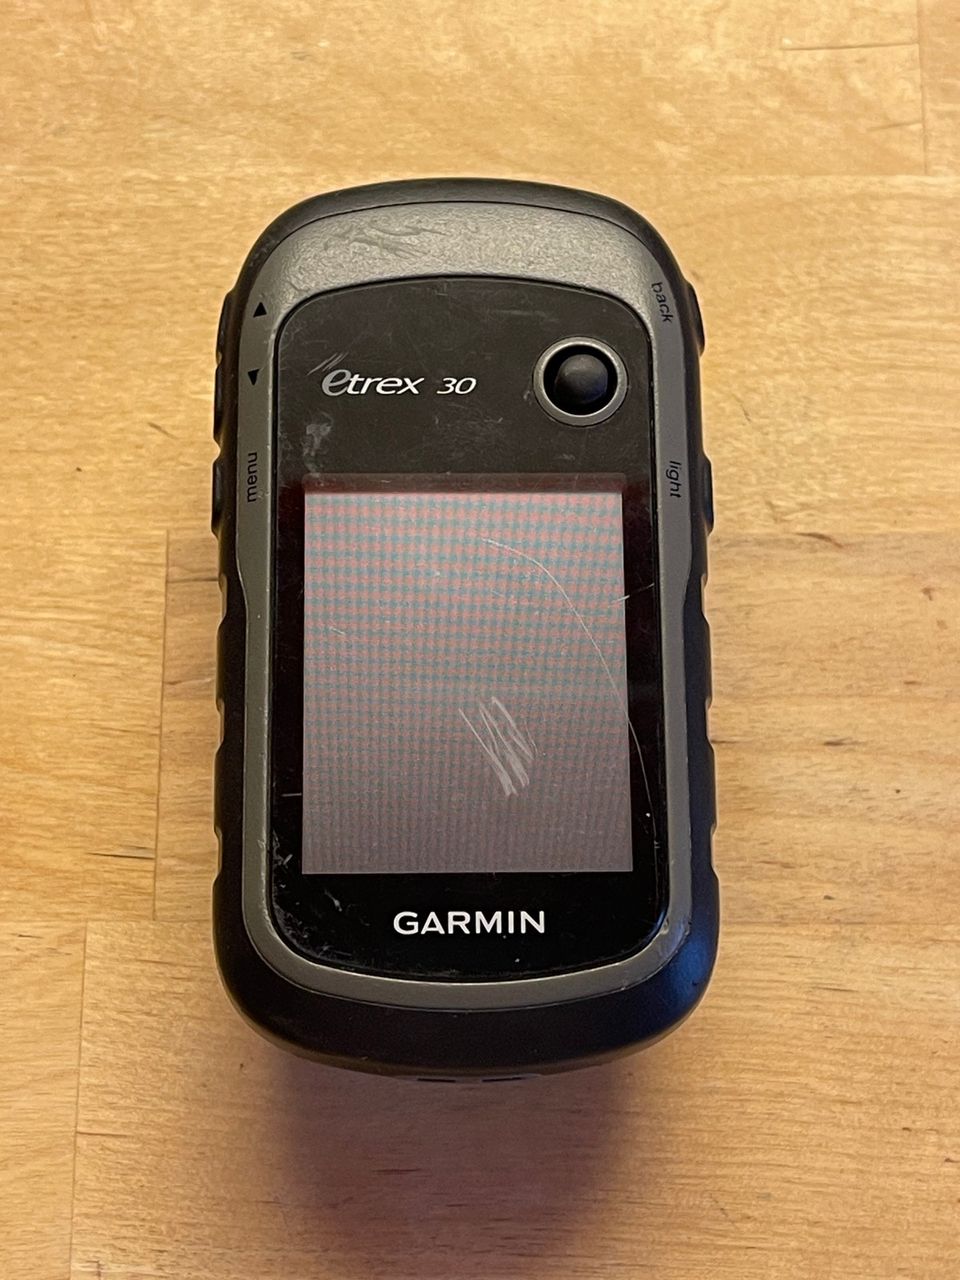 Garmin Etrex 30 GPS + kiinnitystelineet pyörään